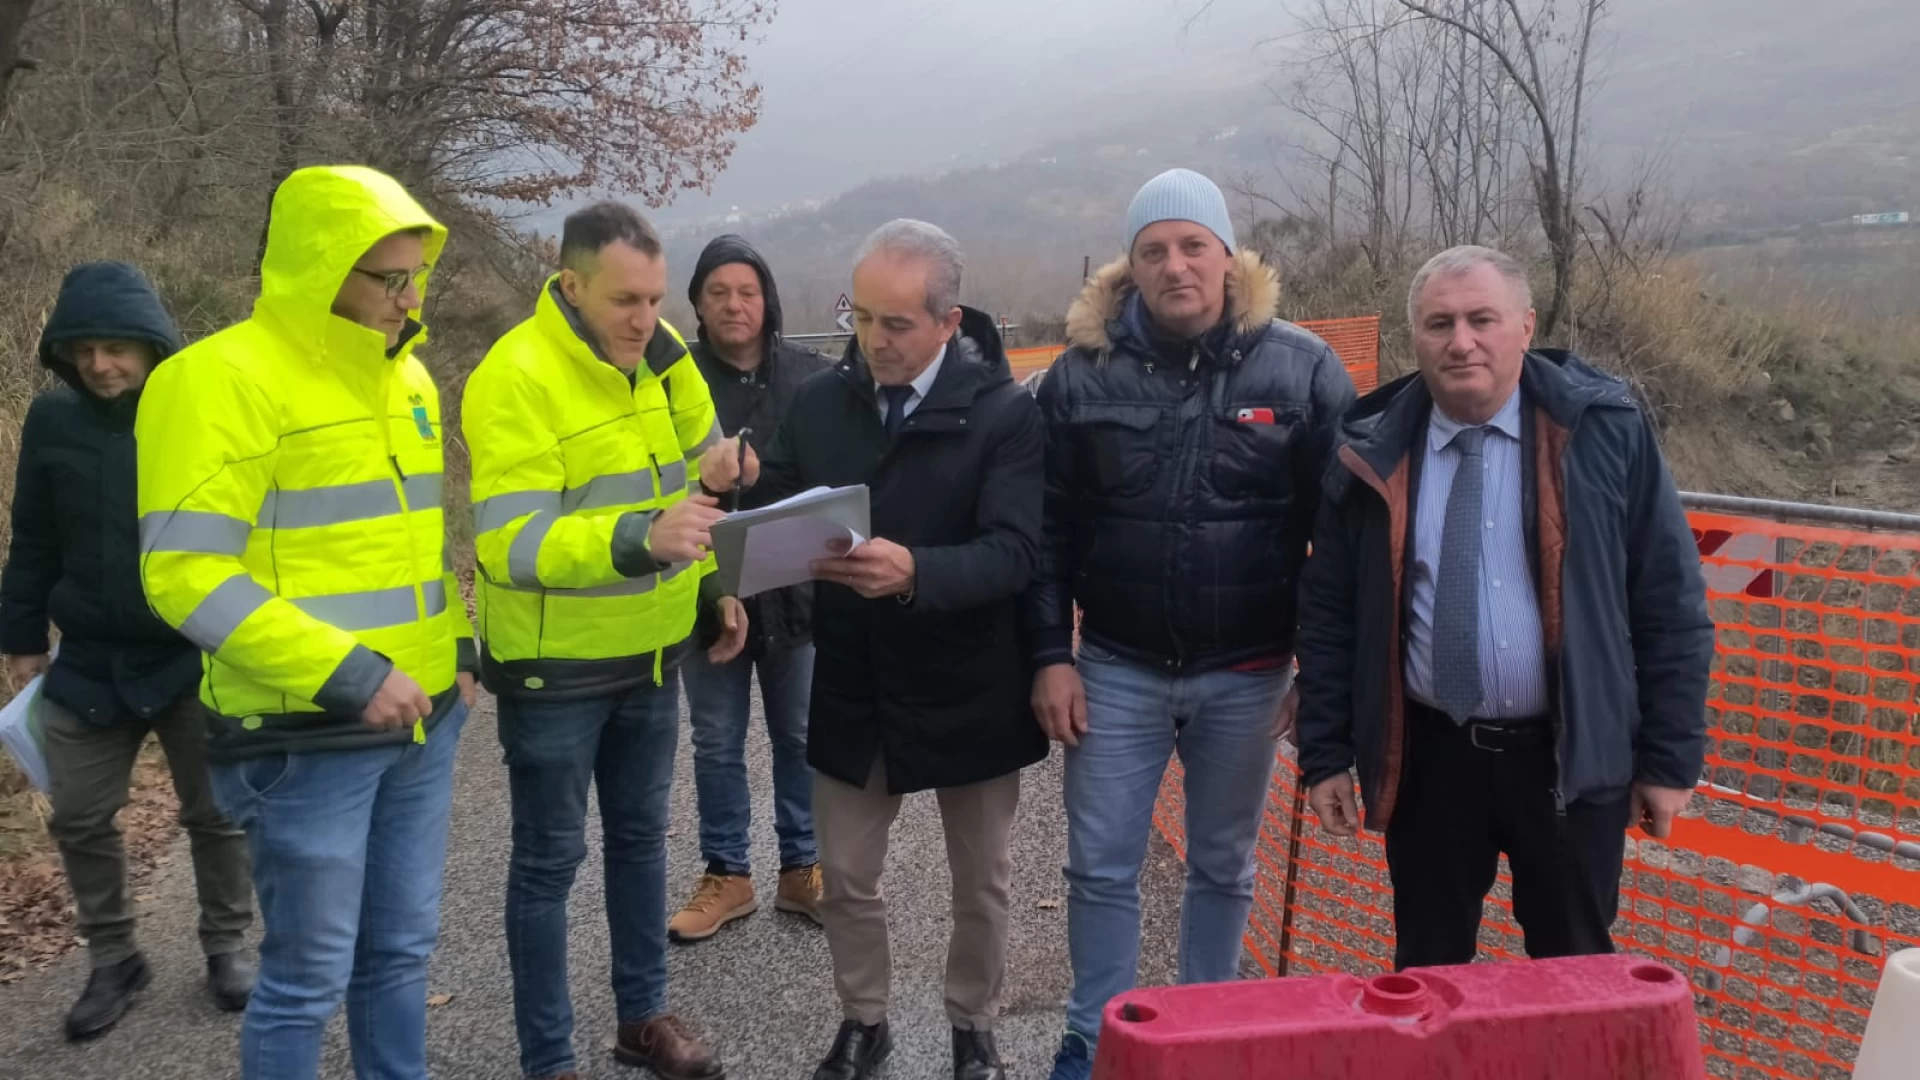 Provincia dell'Aquila: partono i lavori sulla statale 82 in localita' San Giovanni.